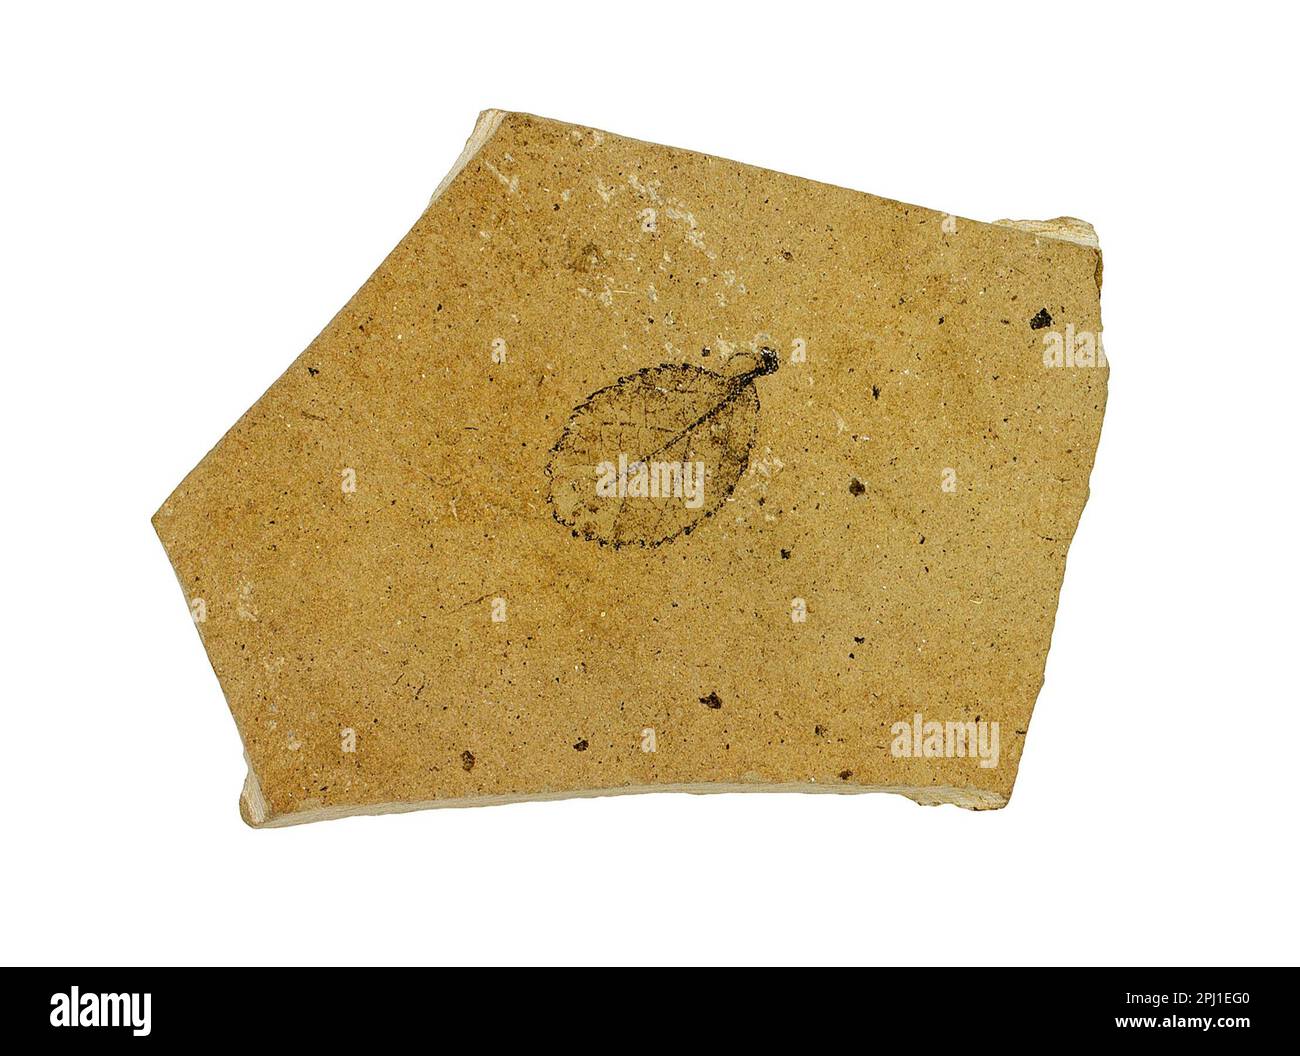 Foglia fossilizzata di betulla, Betula, esemplare fossile su sfondo bianco Foto Stock